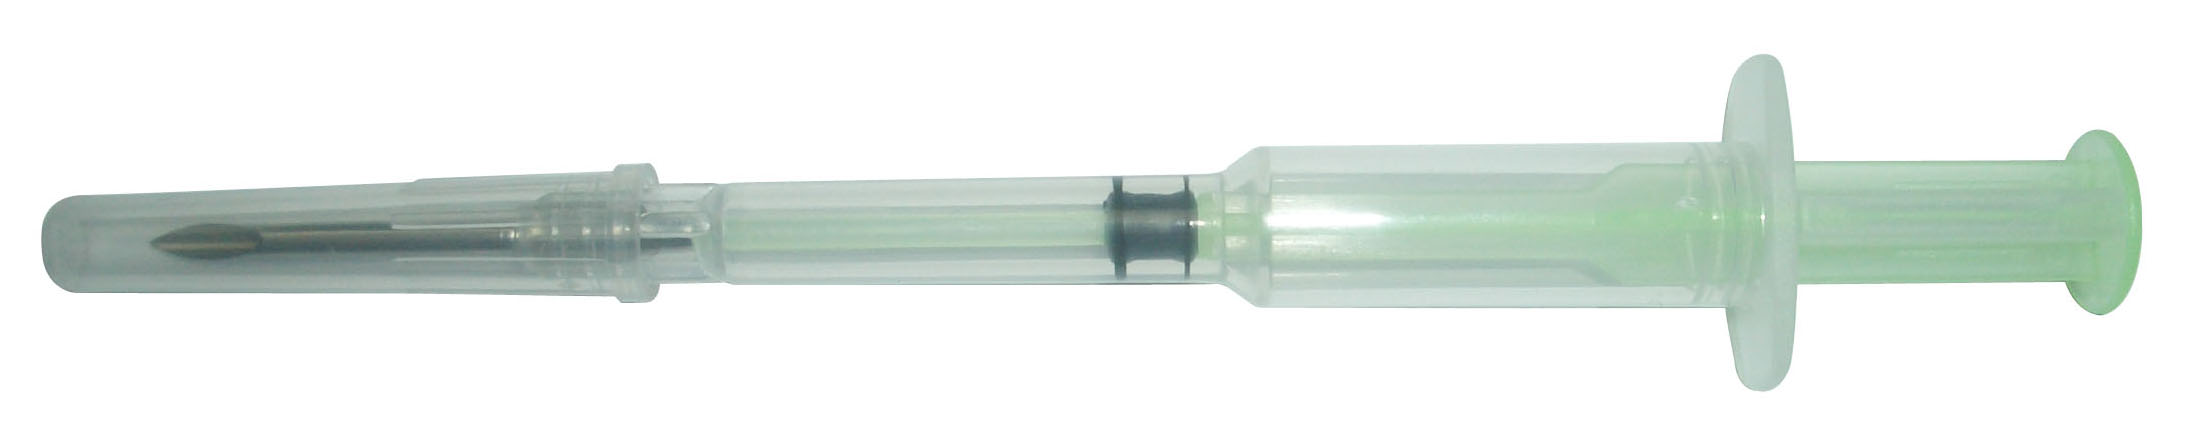 134.2Khz RFID Animal Syringe